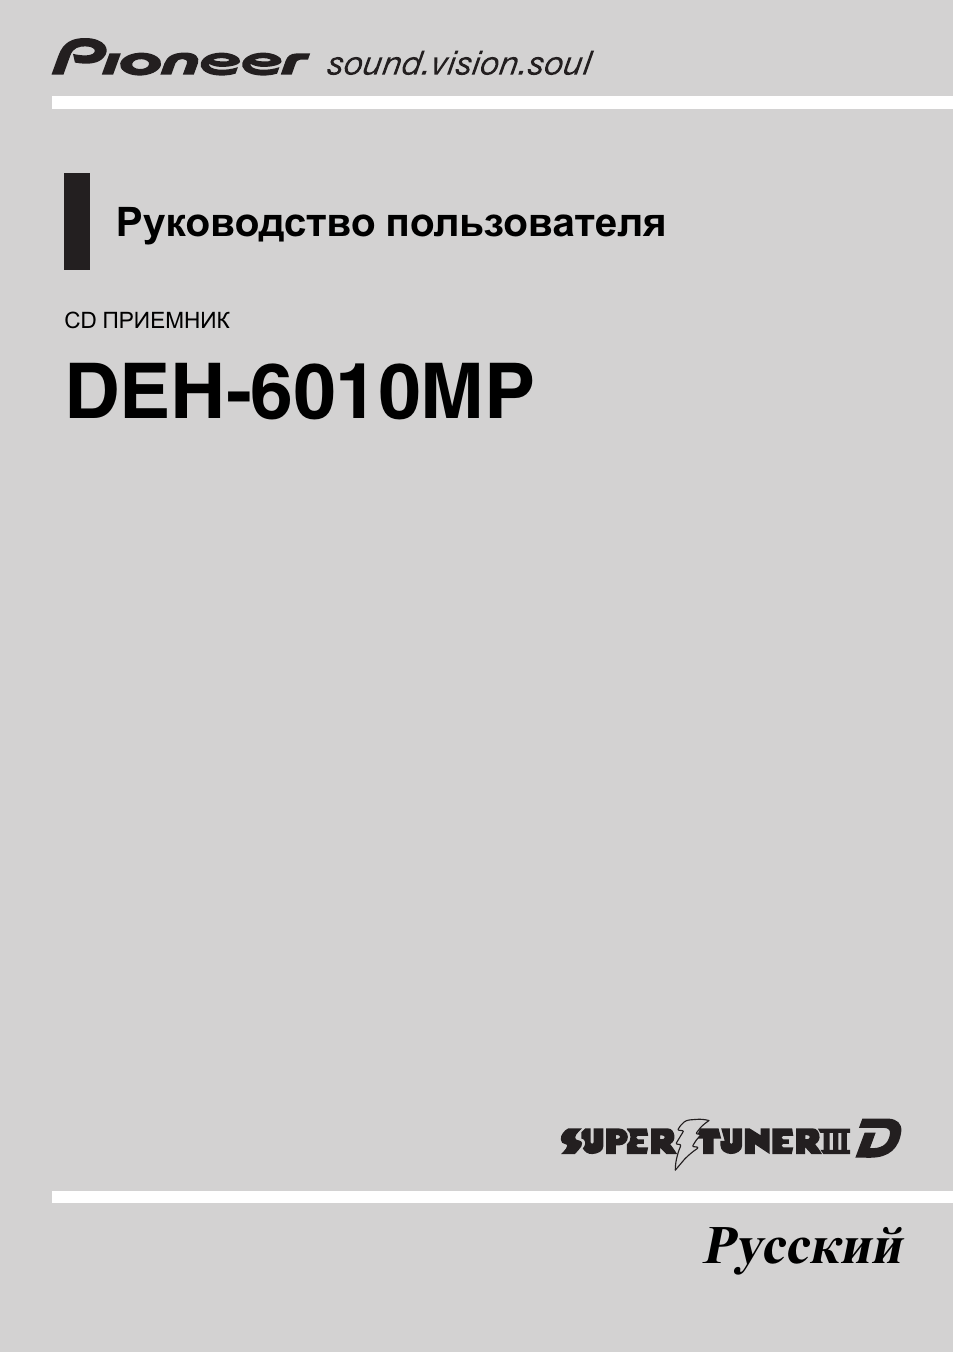 Инструкция по эксплуатации Pioneer DEH-6010 MP | 41 cтраница